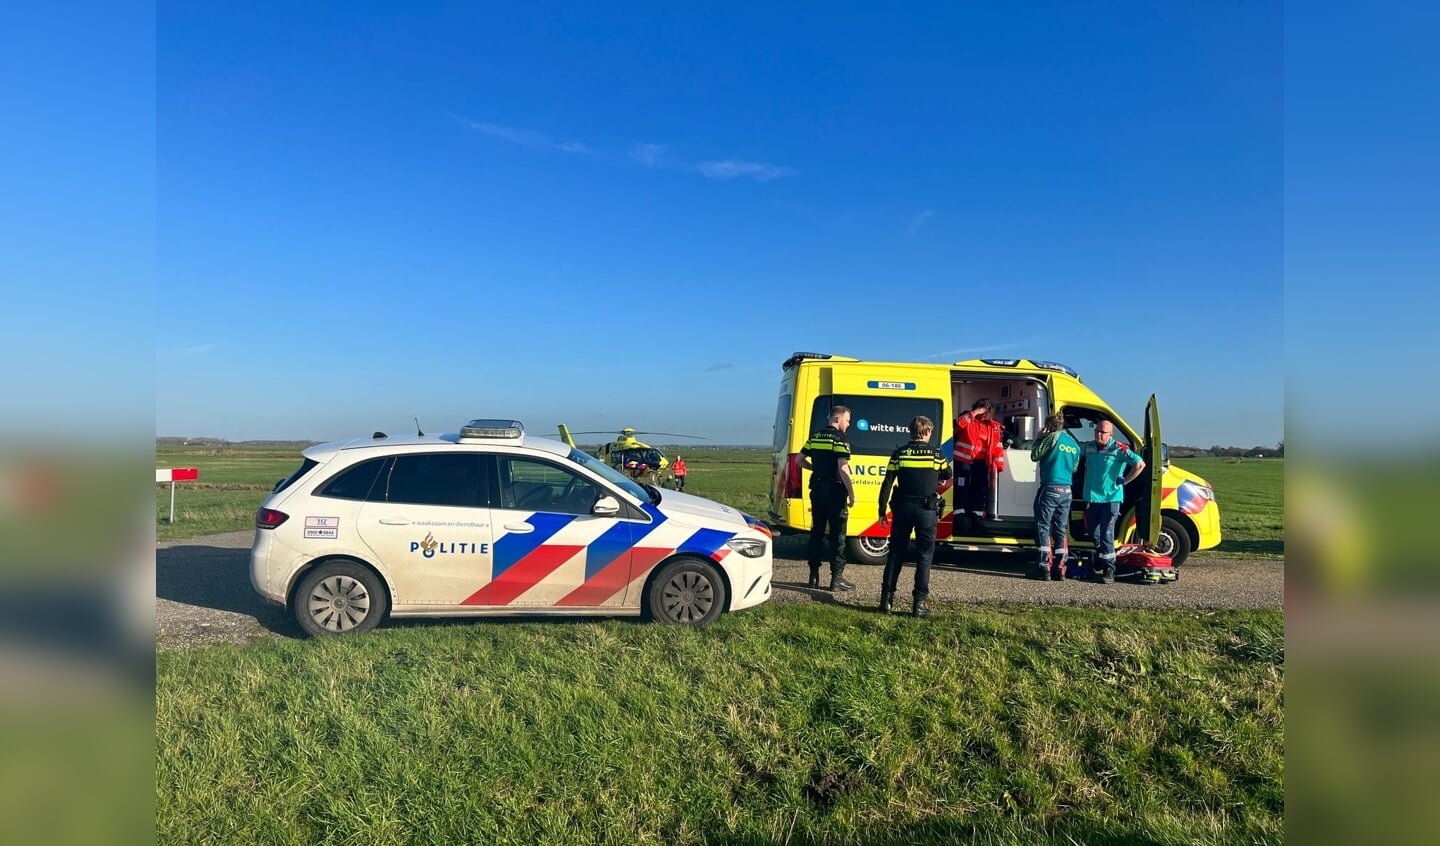 In een ambulance is de voetganger van de Putterweg vervoerd naar de traumahelikopter, die landde in een weiland ter hoogte van Nijkerk.